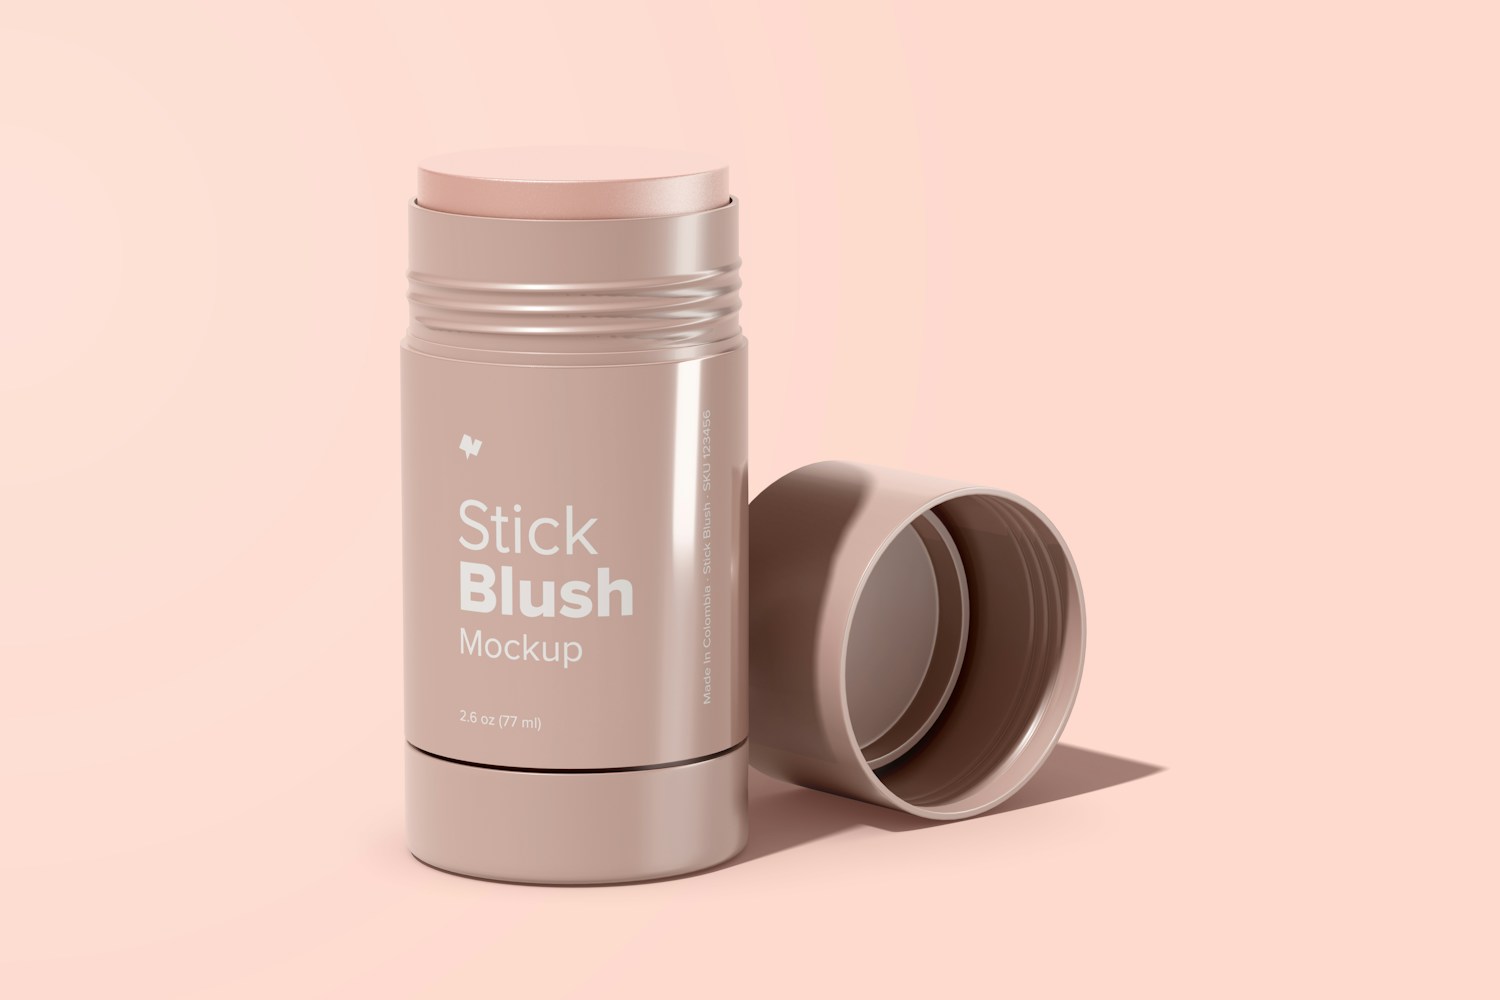 Stick Blush Mockup